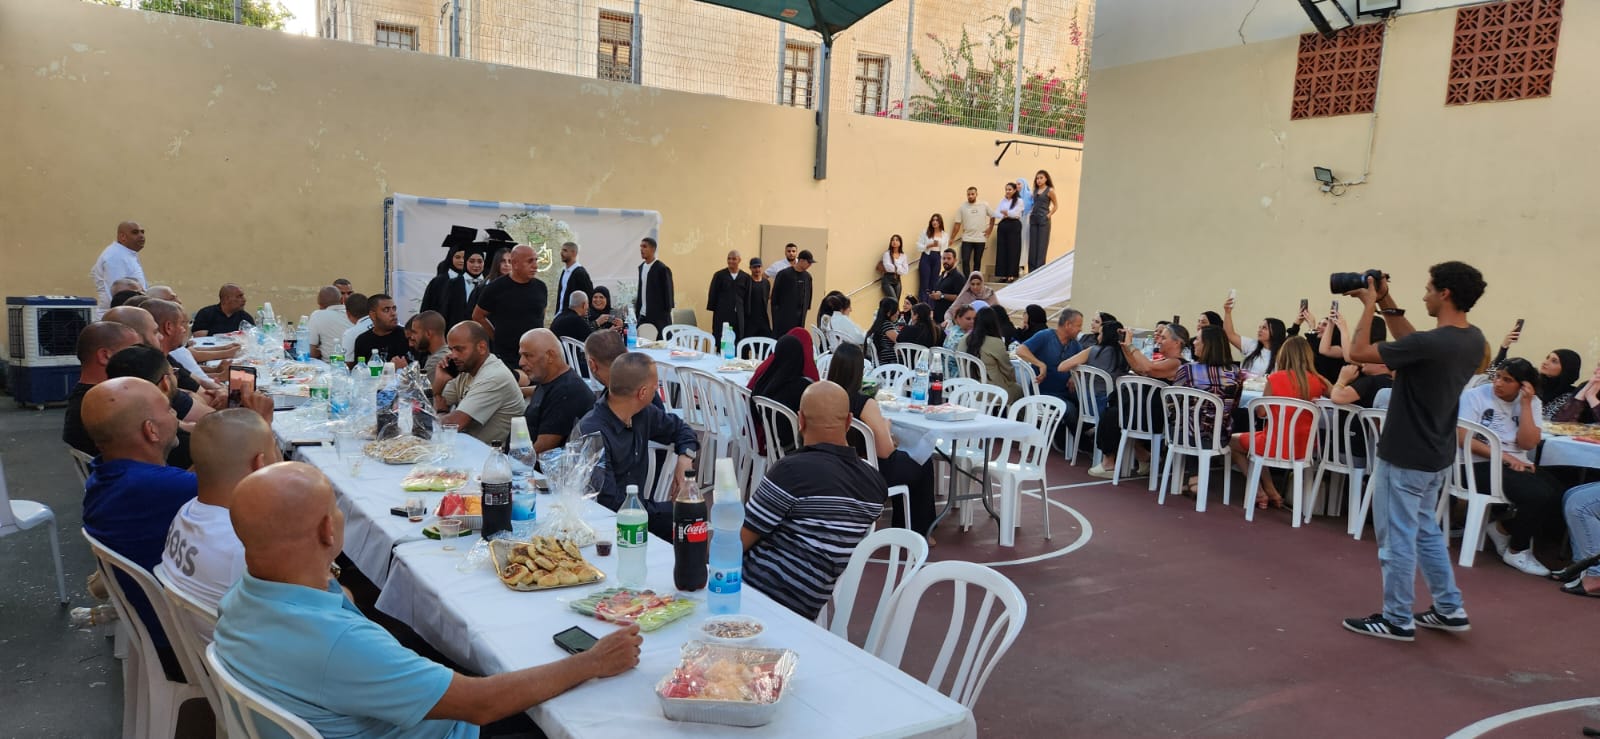 بالصور: مركز العجمي للشبيبة في يافا يُنظم يوماً مفتوحاً 